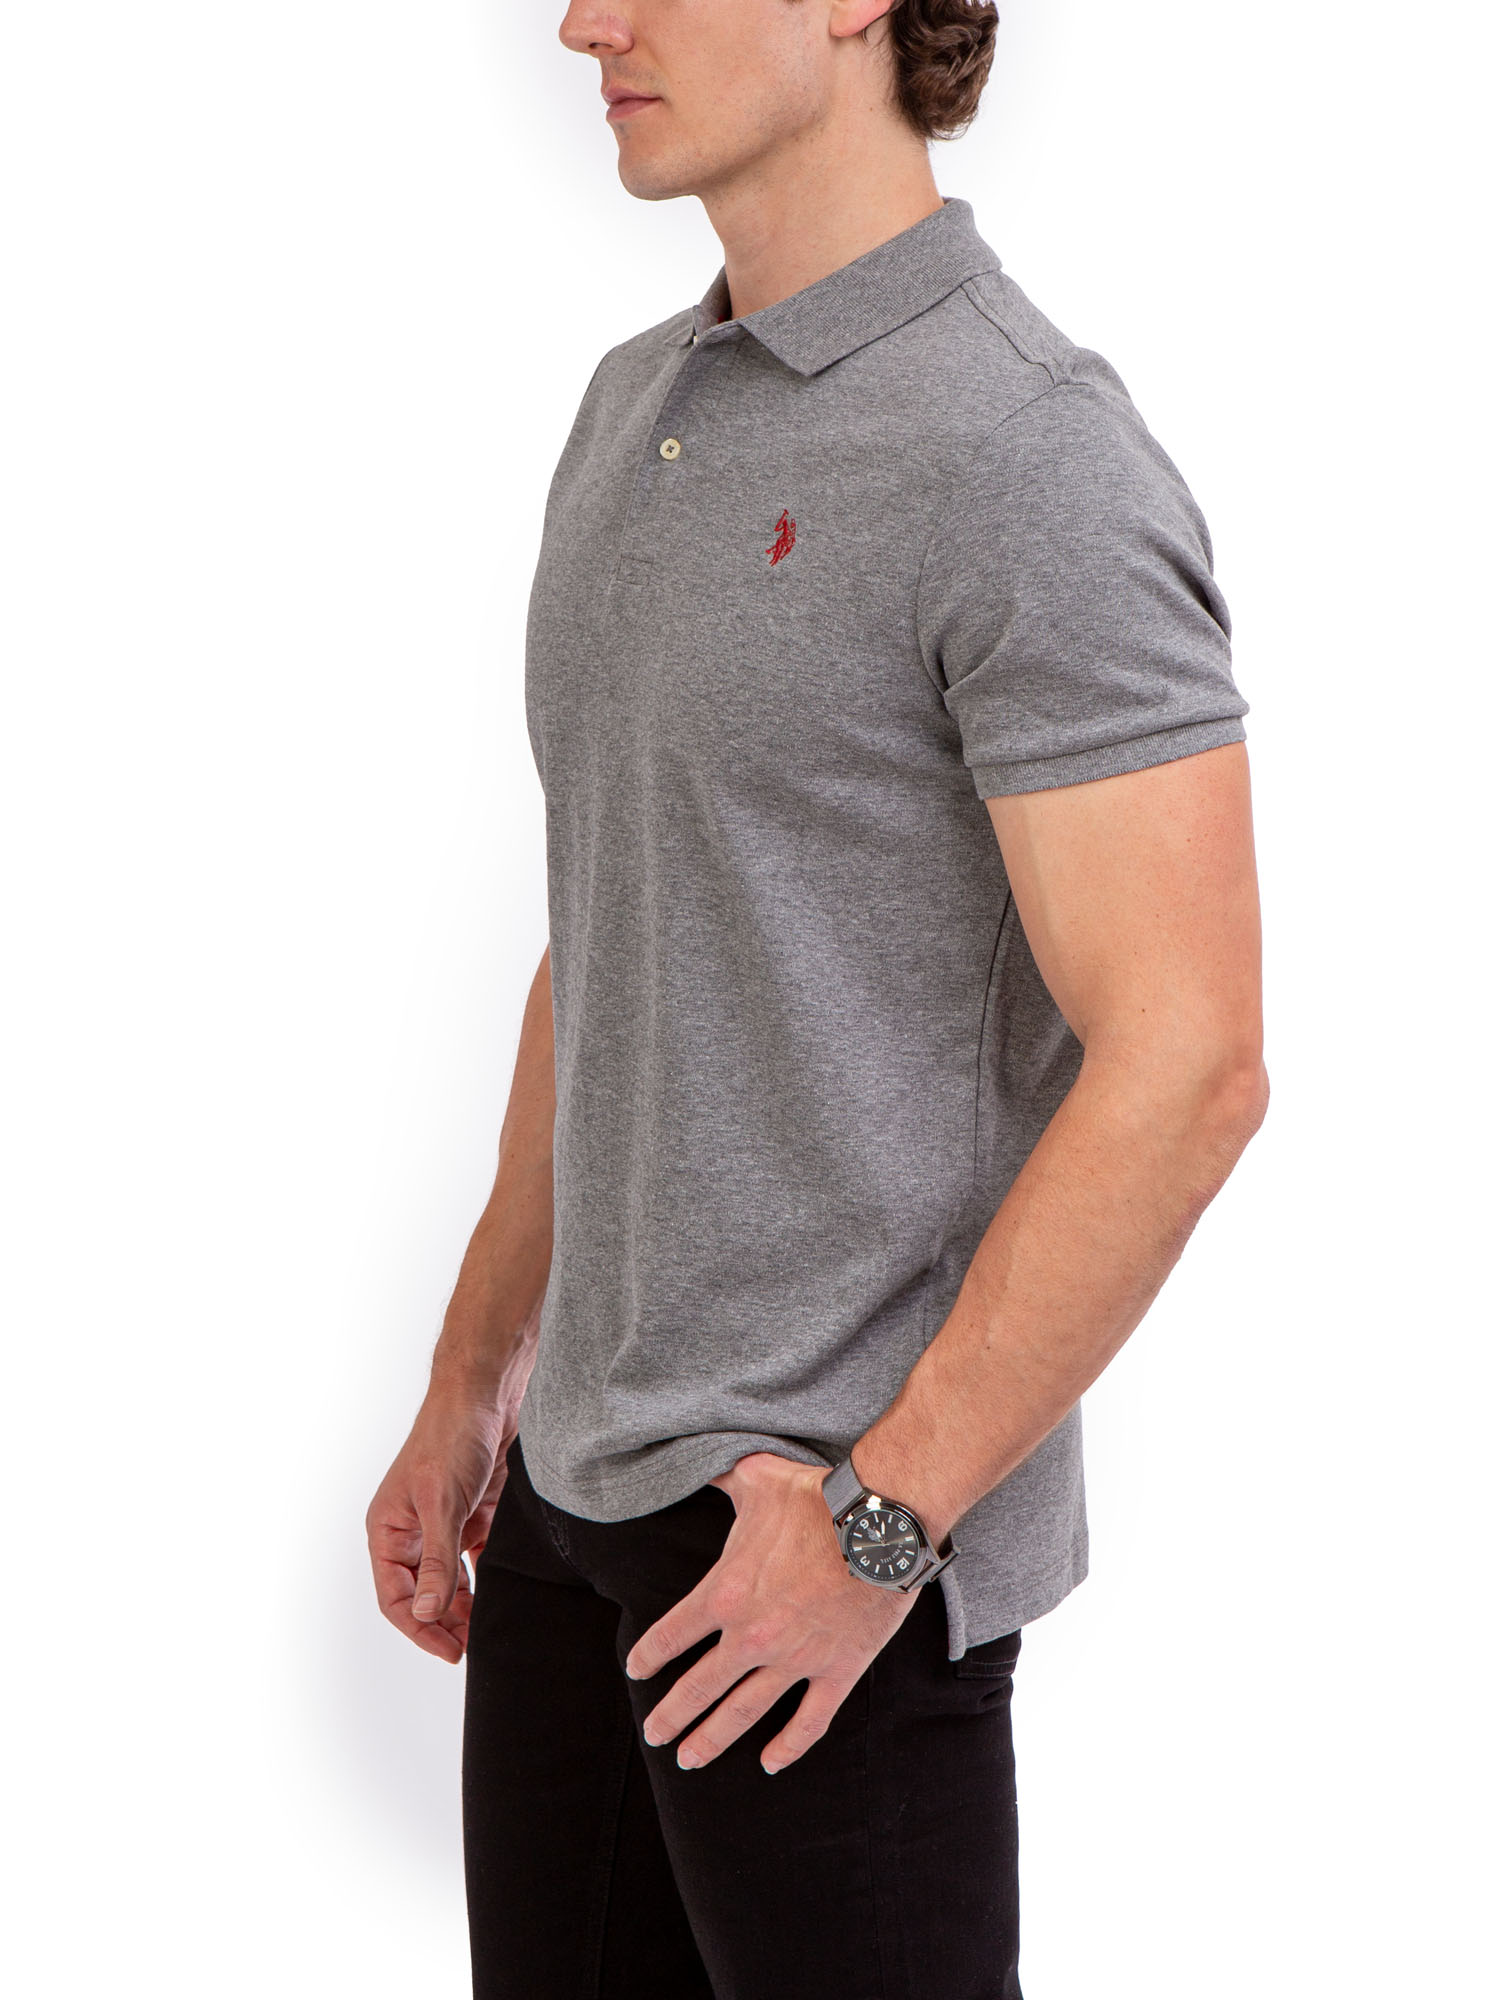 U.S. Polo Assn. Men's Interlock Polo Shirt - image 2 of 4